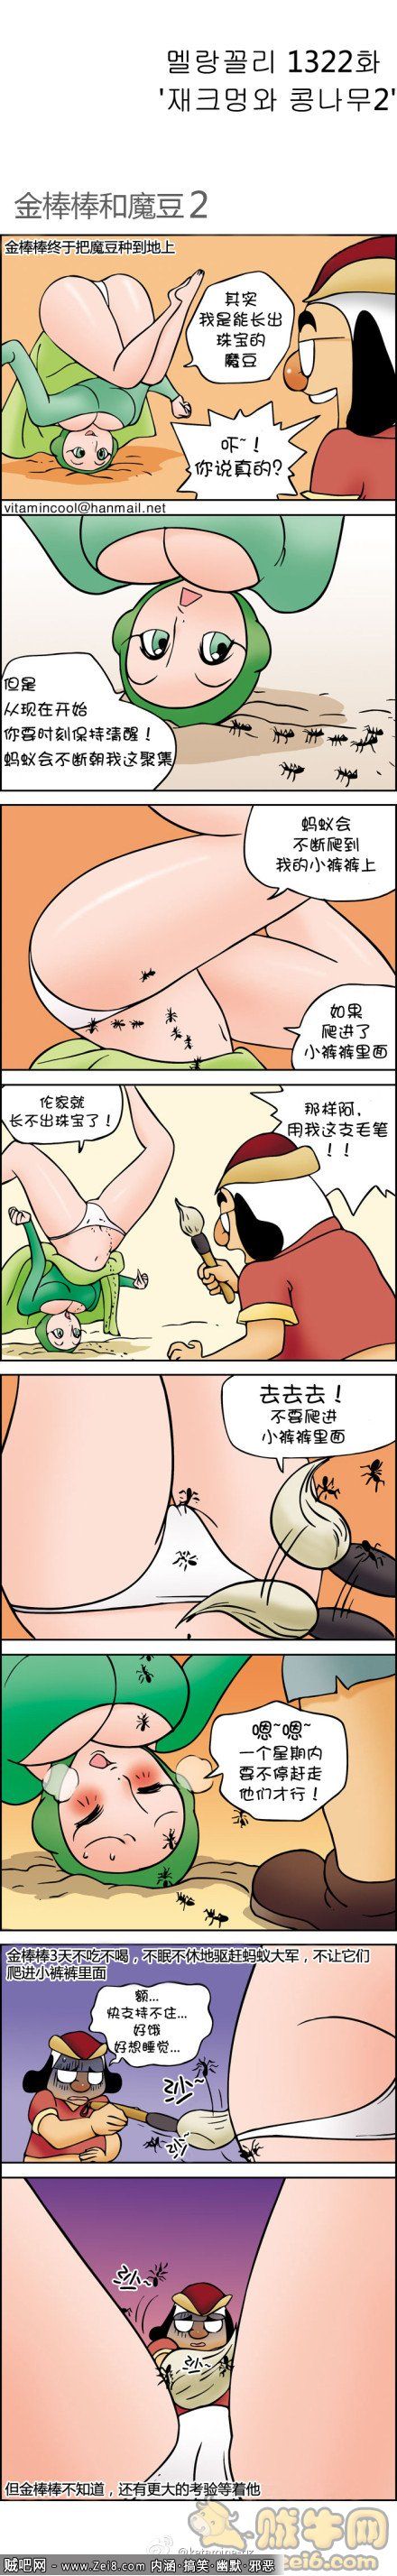 [韩国色系金箍棒邪恶漫画]：开心农村2